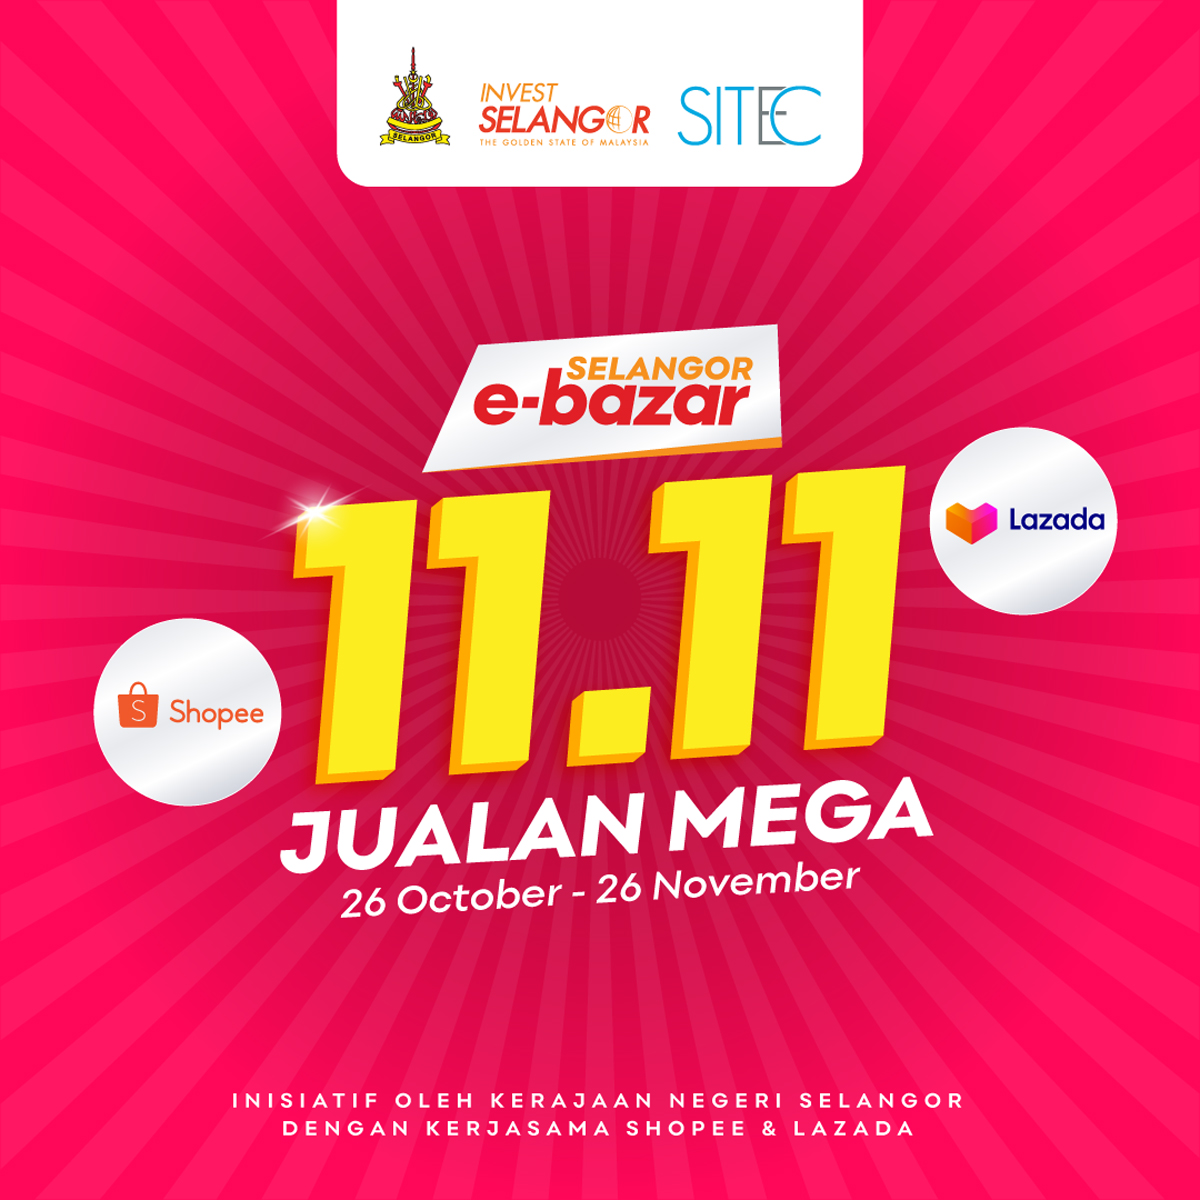 Selangor Govt E-Bazar Mega Sales Campaign